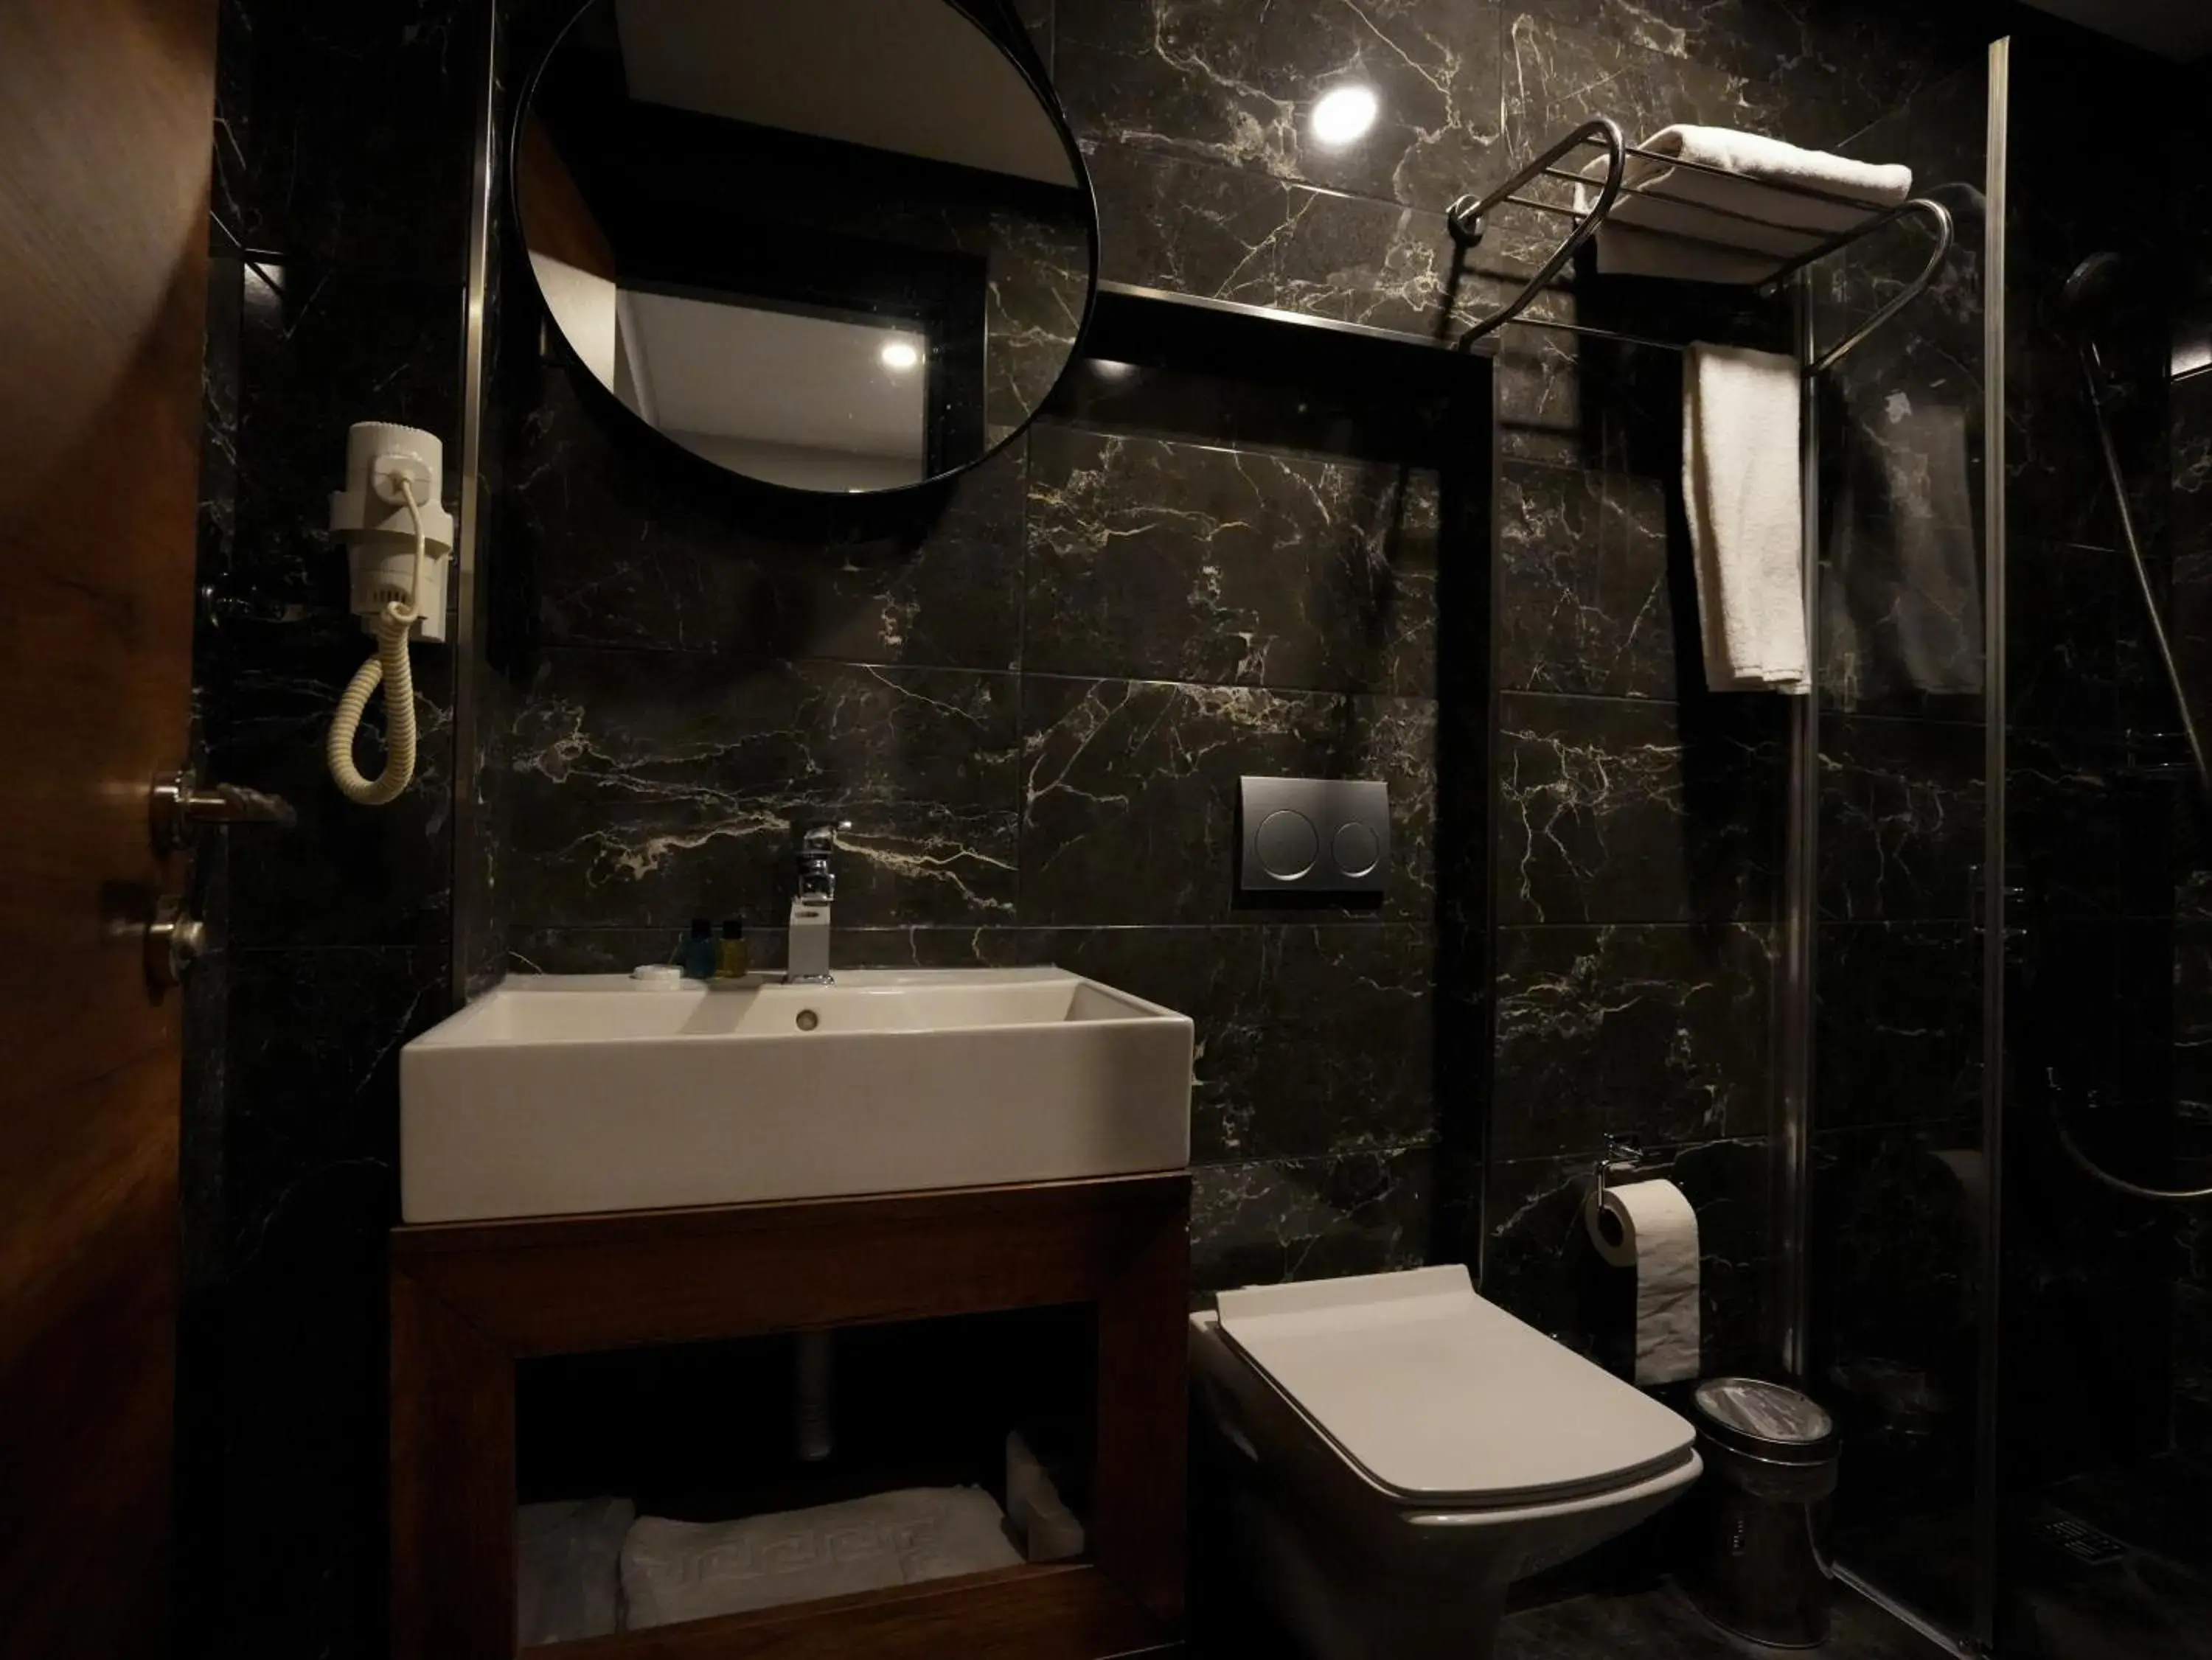 Bathroom in zalel hotels laleli